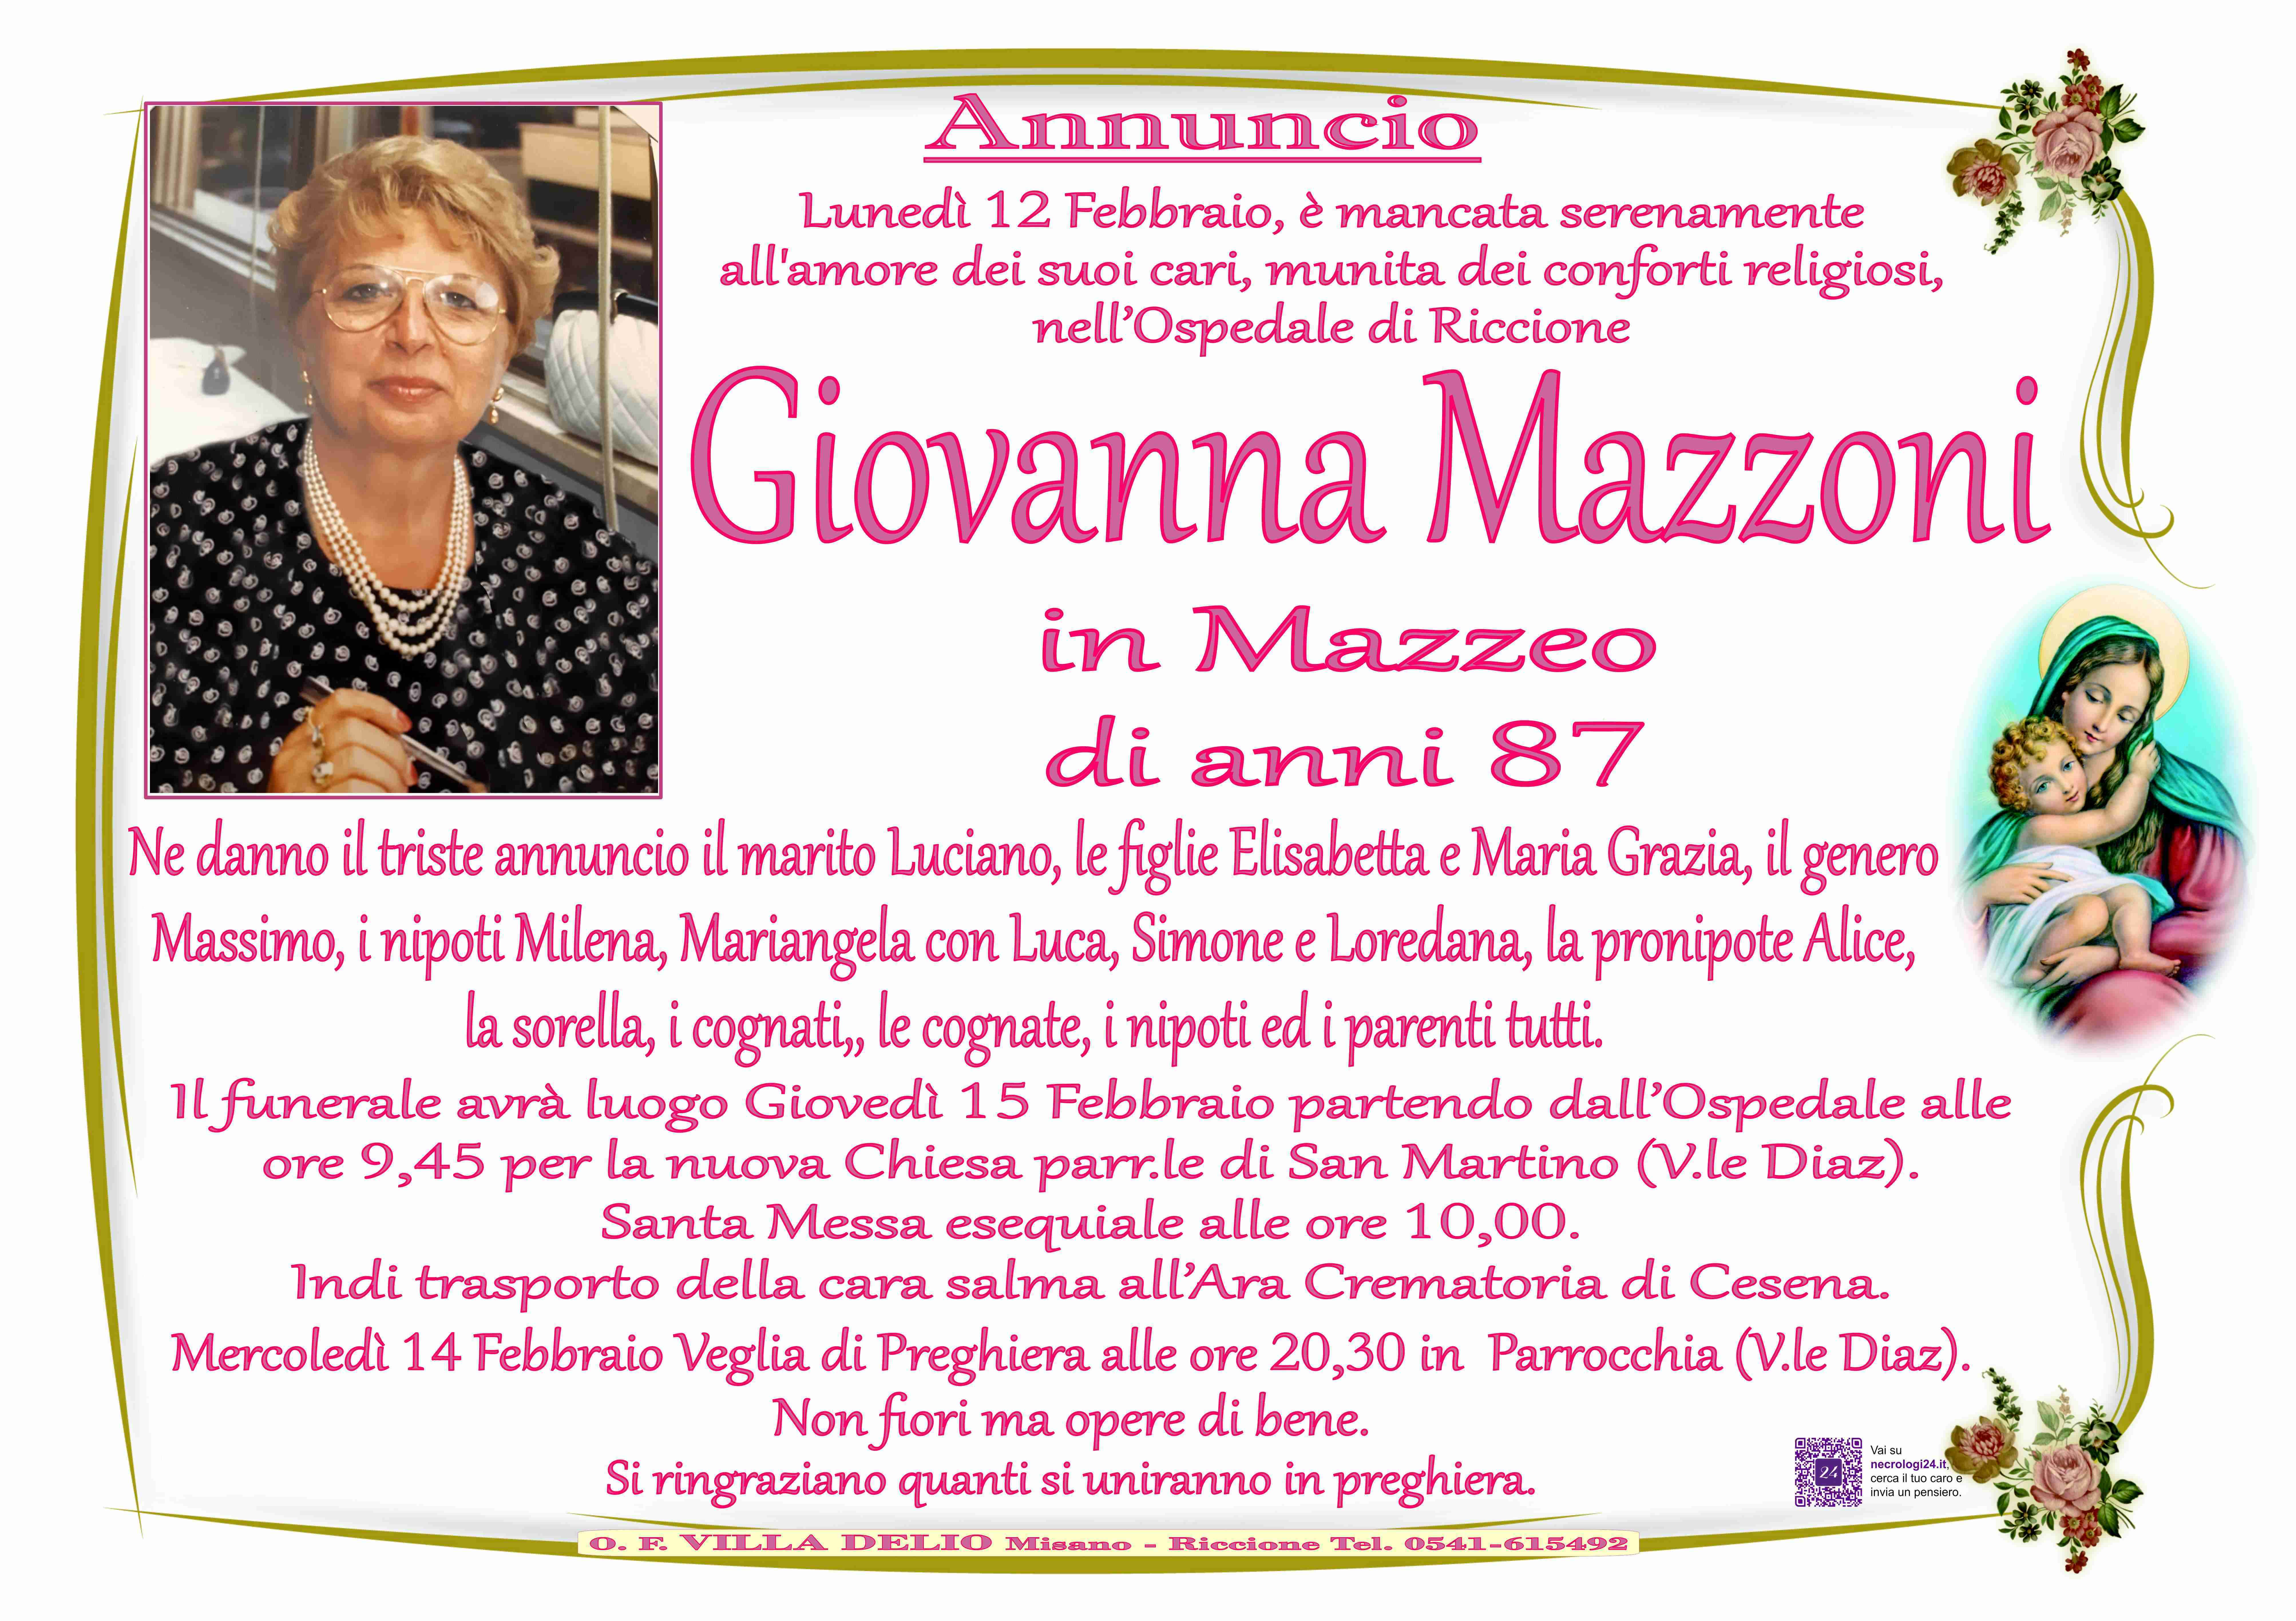 Giovanna Mazzoni